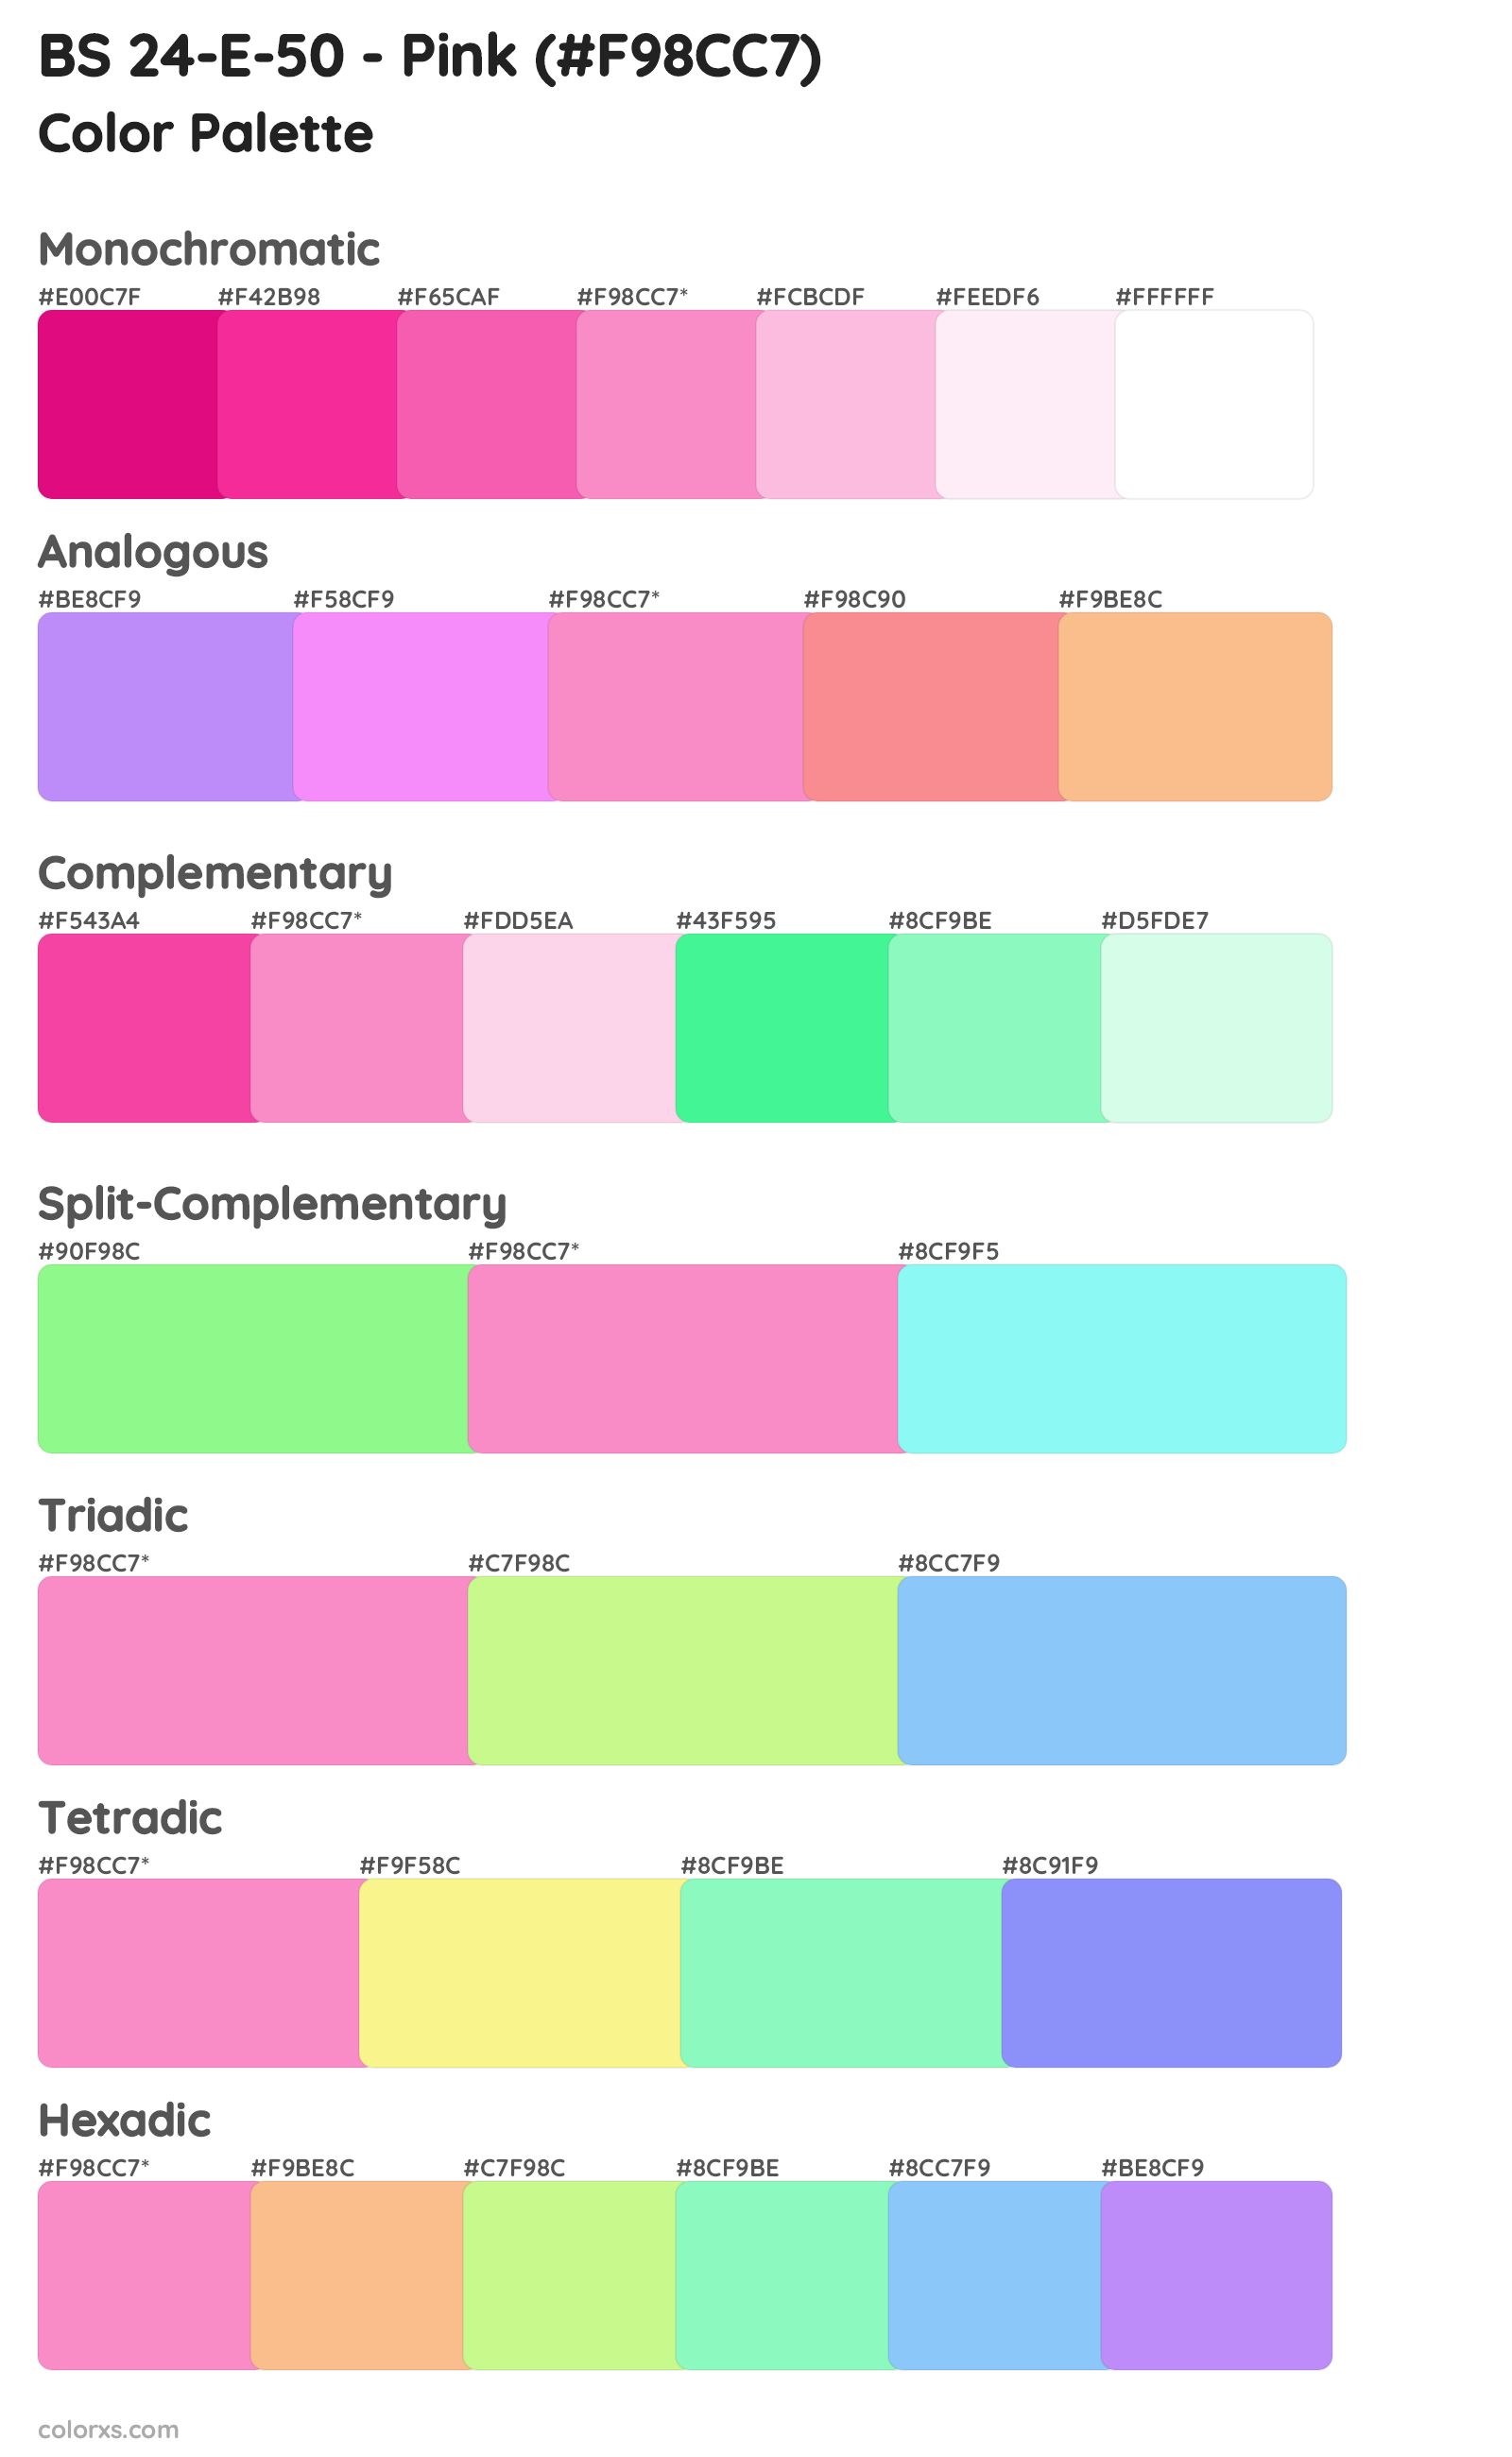 BS 24-E-50 - Pink Color Scheme Palettes